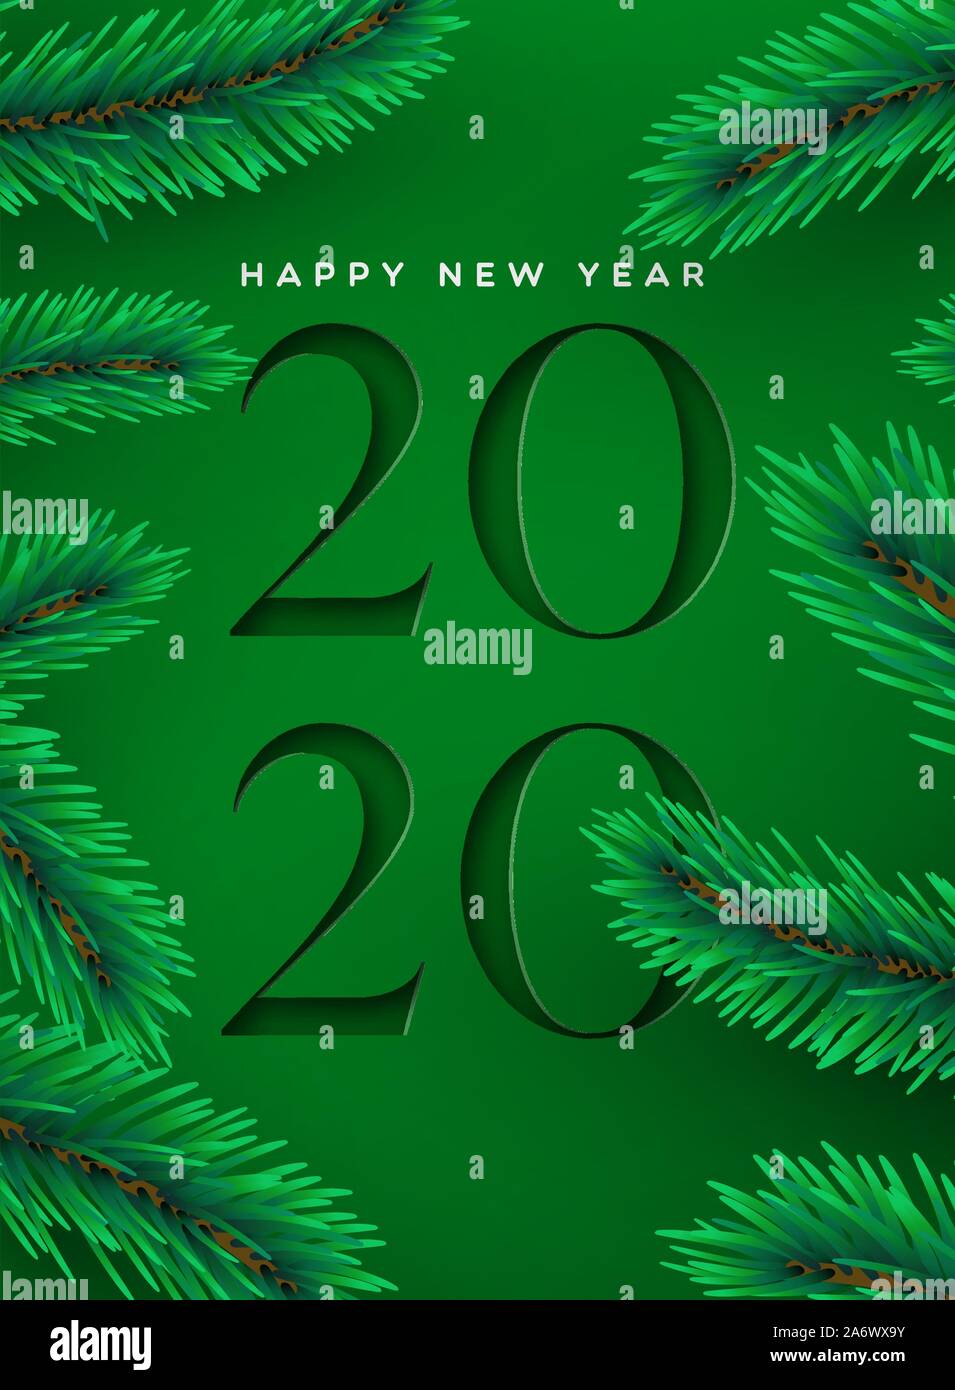 Frohes neues Jahr 2020 Grußkarte Abbildung: Festliche grüner Hintergrund mit Papier schneiden Kalender Anzahl und realistische 3D-Pine Tree Dekoration. Stock Vektor